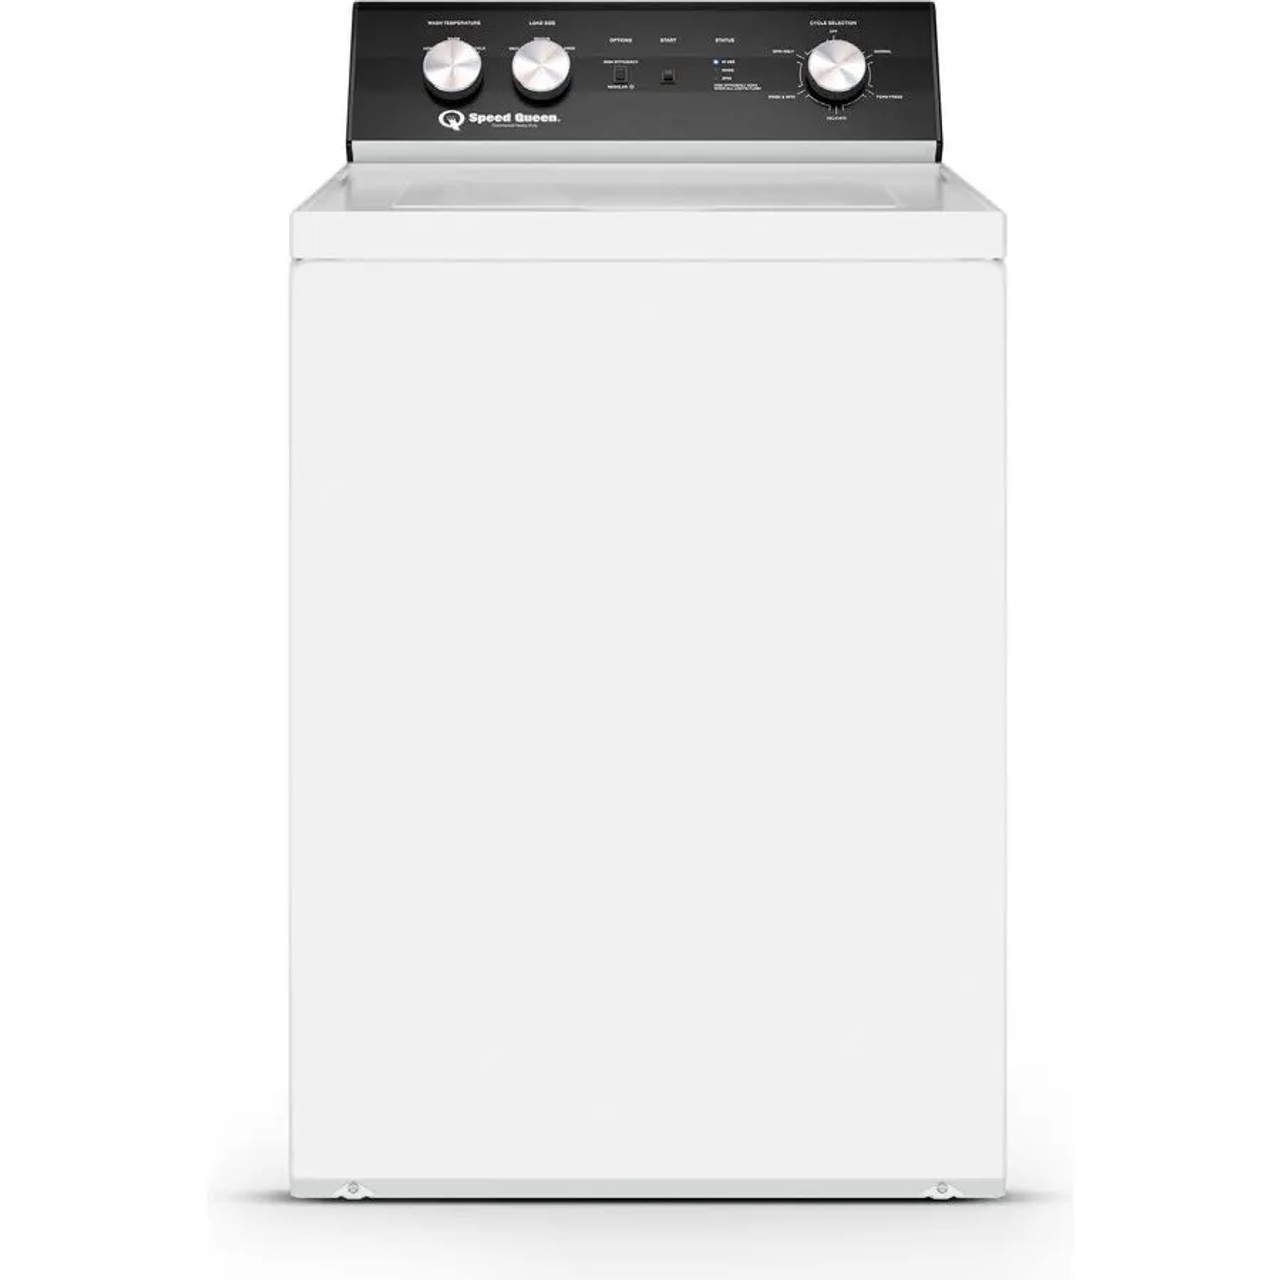 AWNA62BLACK – 8.5kg Top Load Washing Machine – White